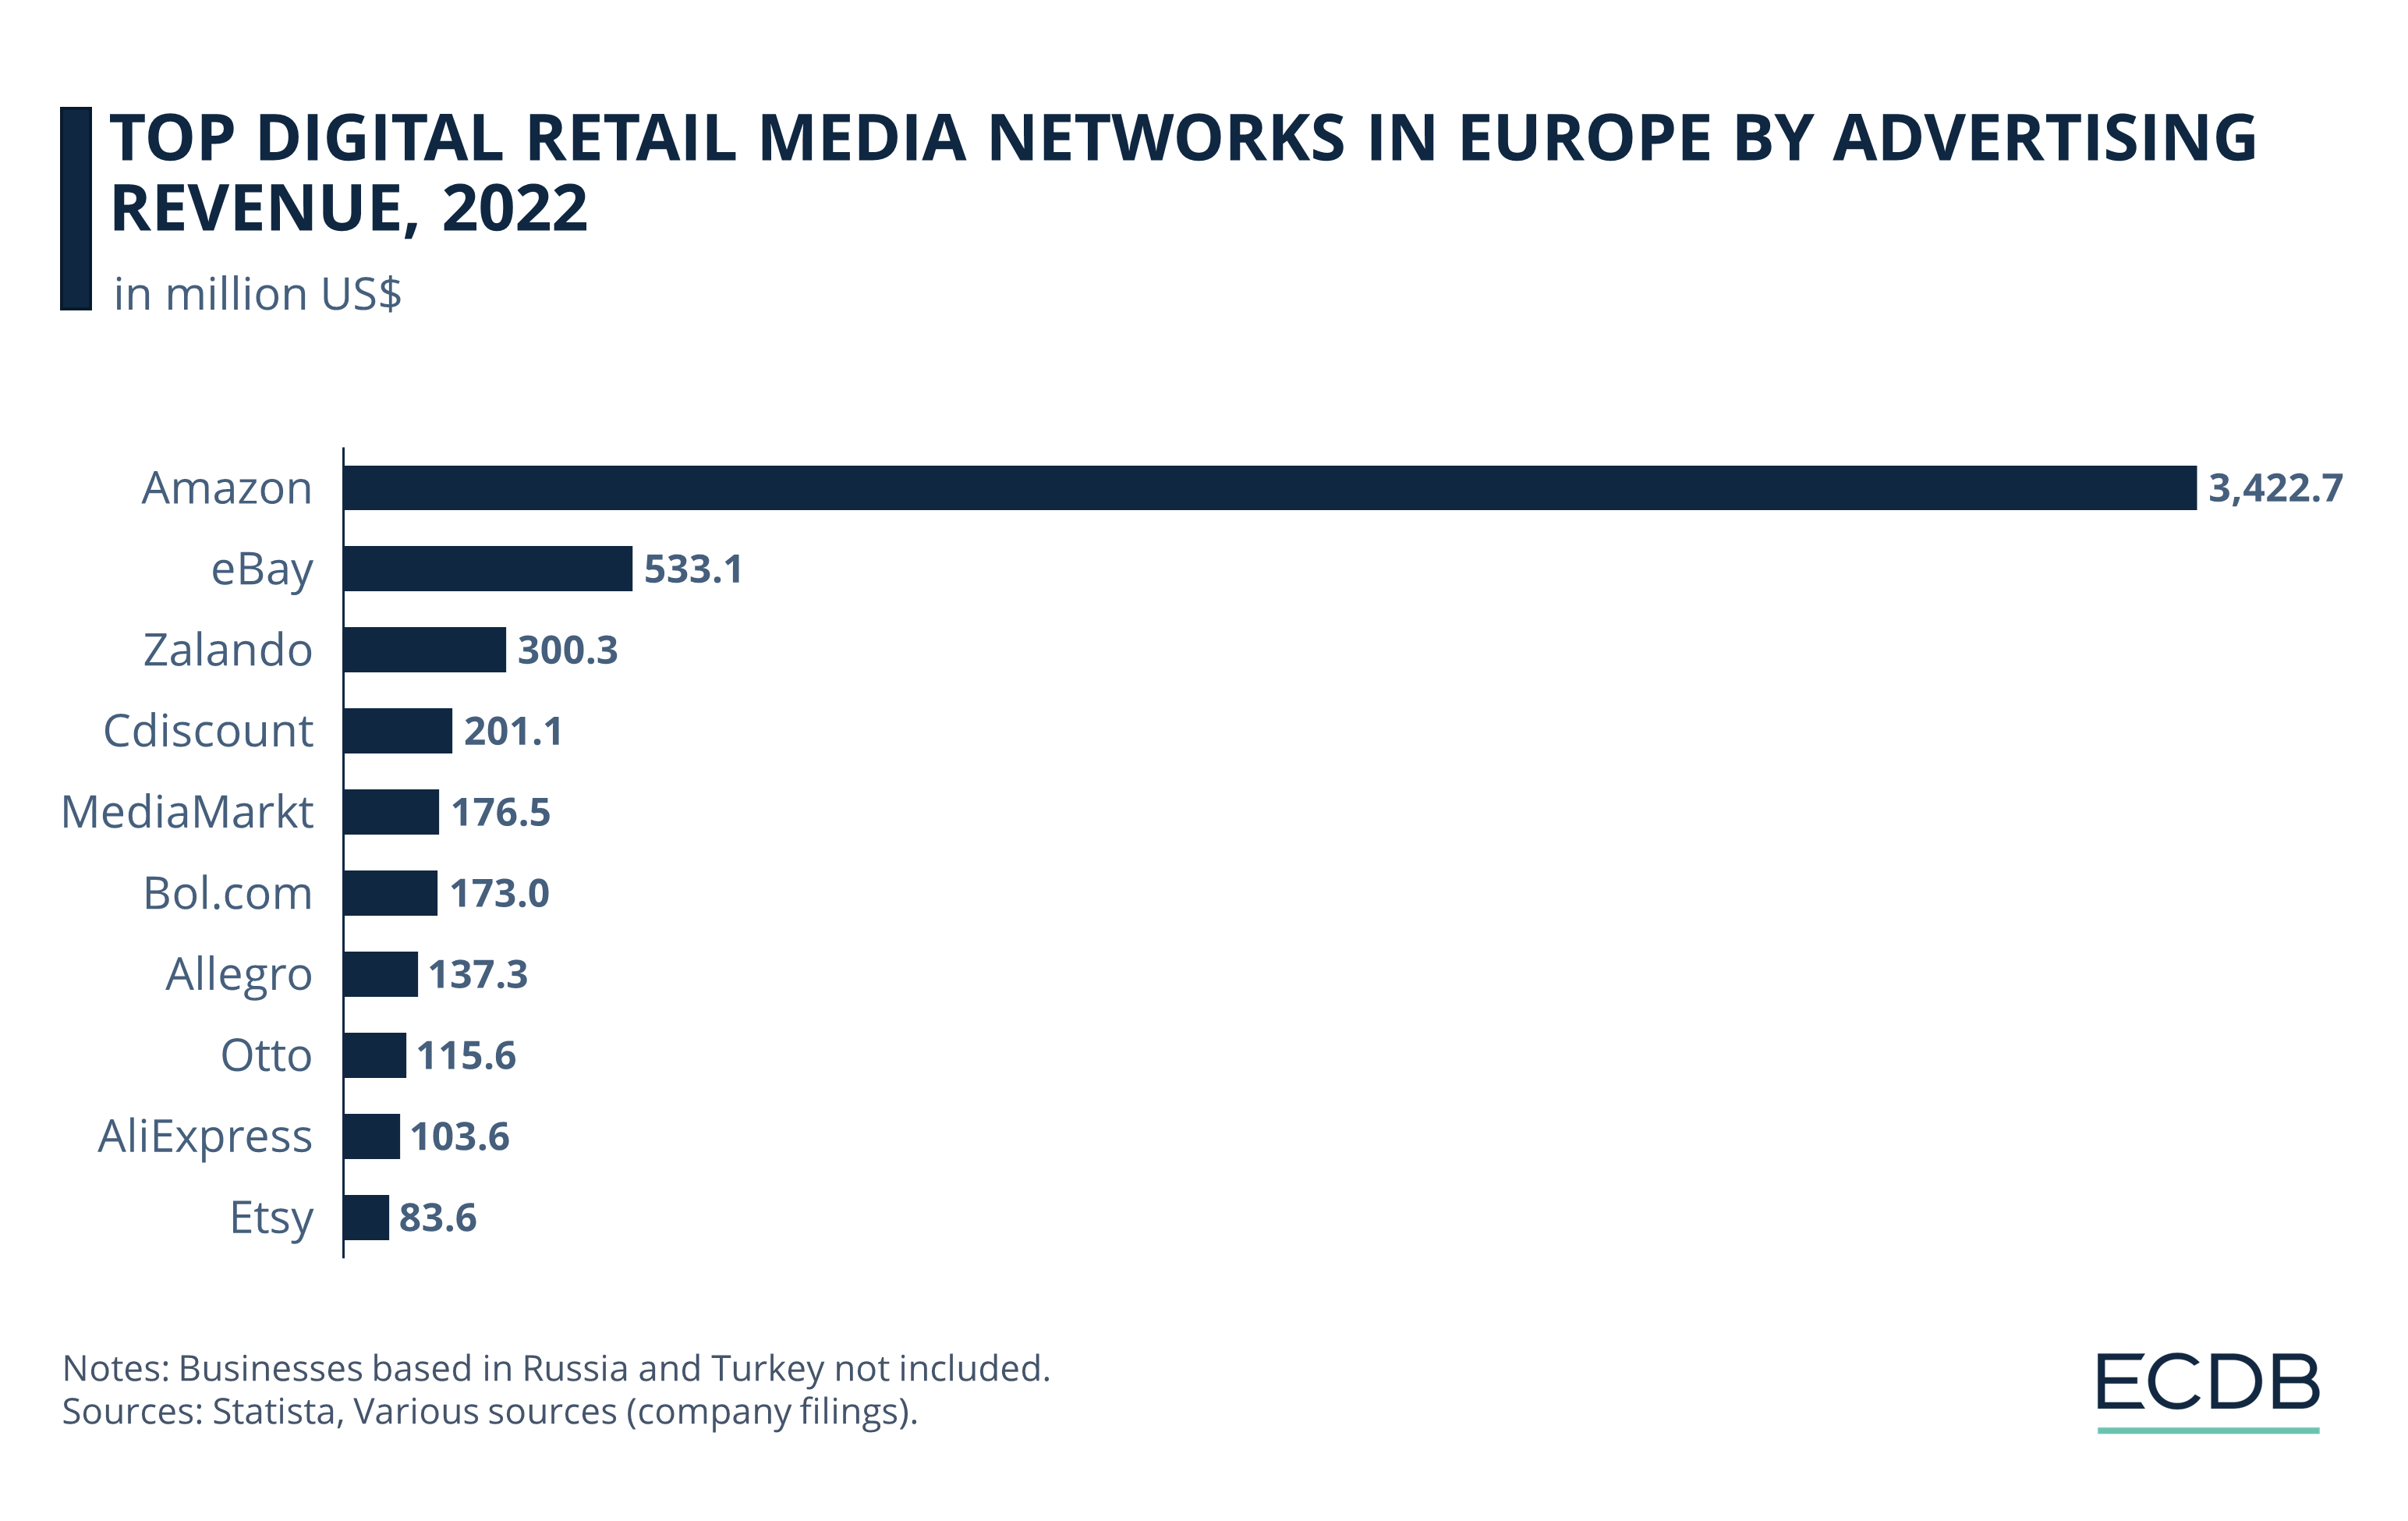 Top Digital Retail Media Networks in Europe by Advertising Revenue, 2022